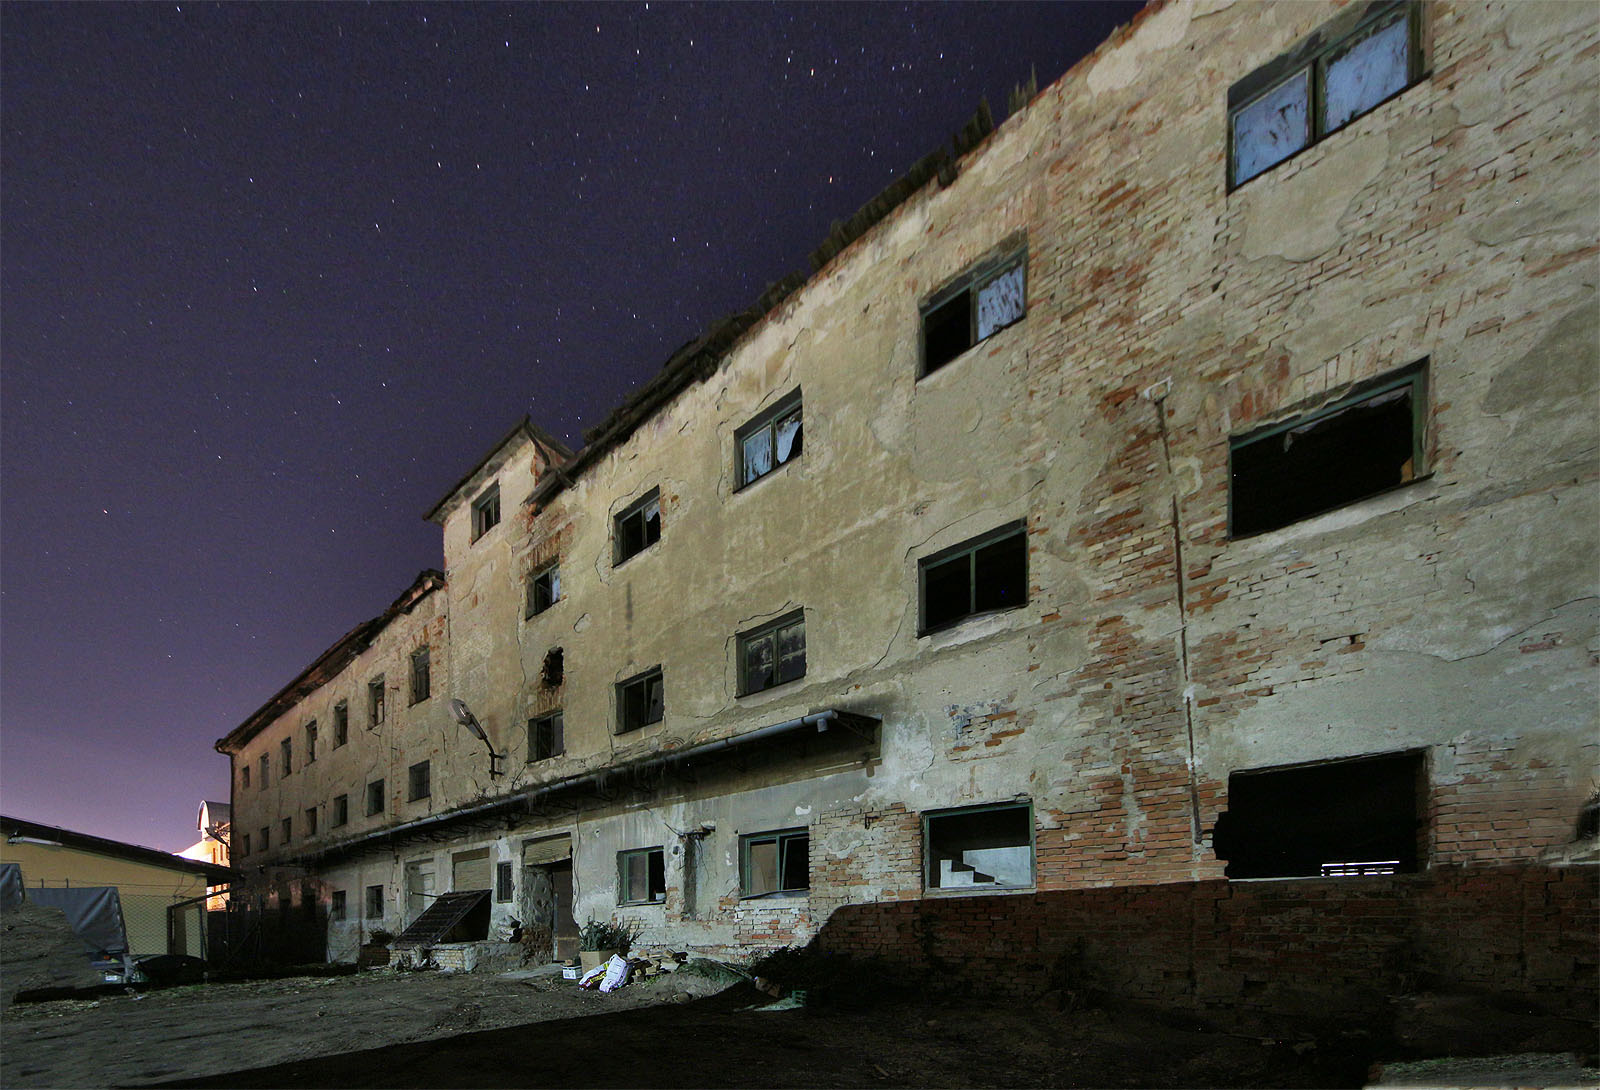 Na nočním snímku severovýchodní ze dvou budov Langovy tkalcovny je dobře vidět rozdíl mezi původními okny v jihozápadním a upravenými okny v severovýchodním křídle budovy. V pozadí je vidět druhá část tkalcovny, nasvětlená budova čp. 139.